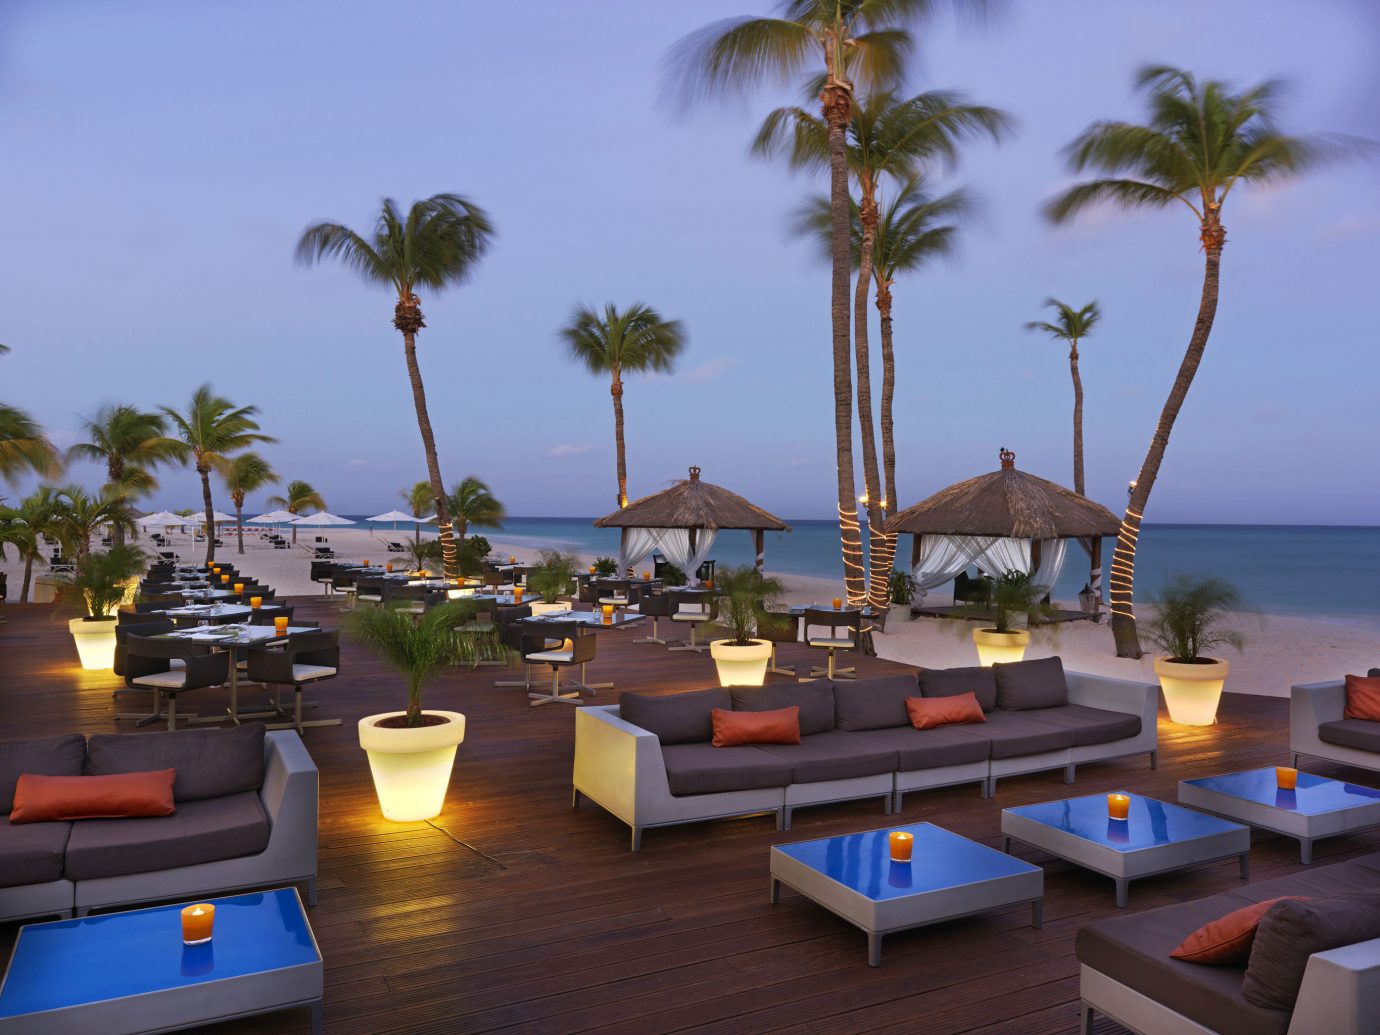 8 Best Hotels in Aruba